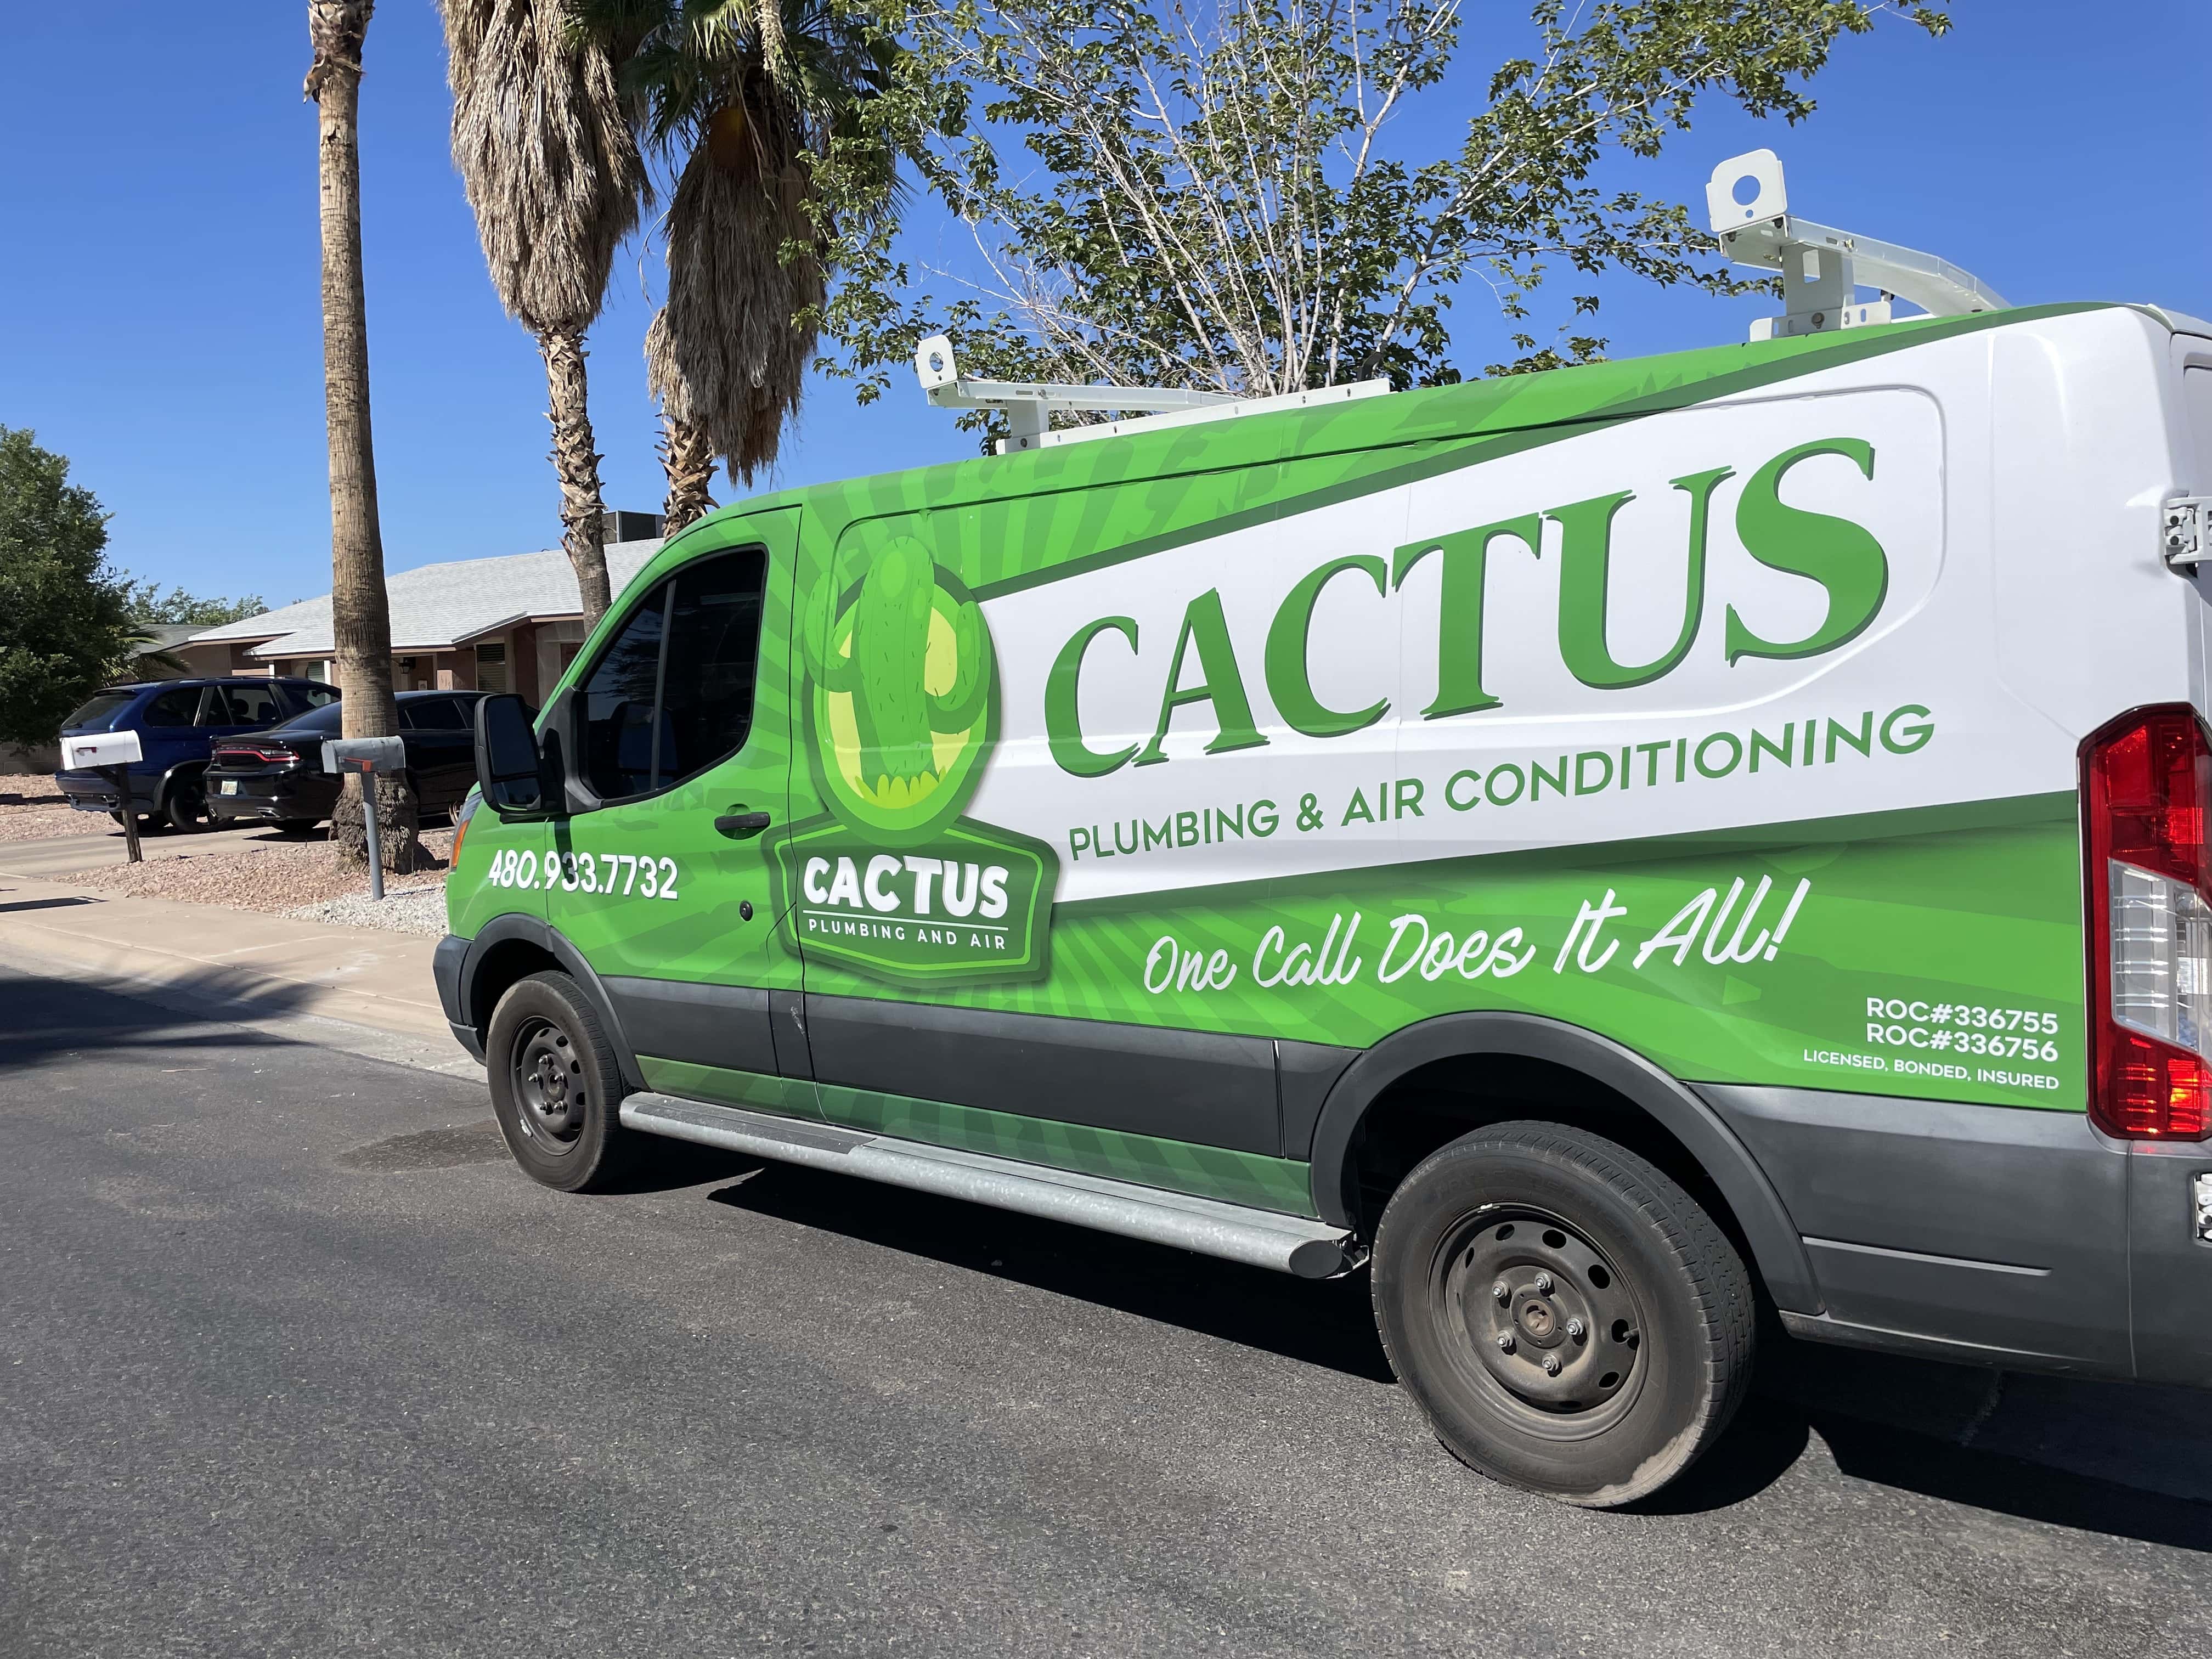 Cactus Plumbing And Air - Mesa, AZ, US, plumbing services near me